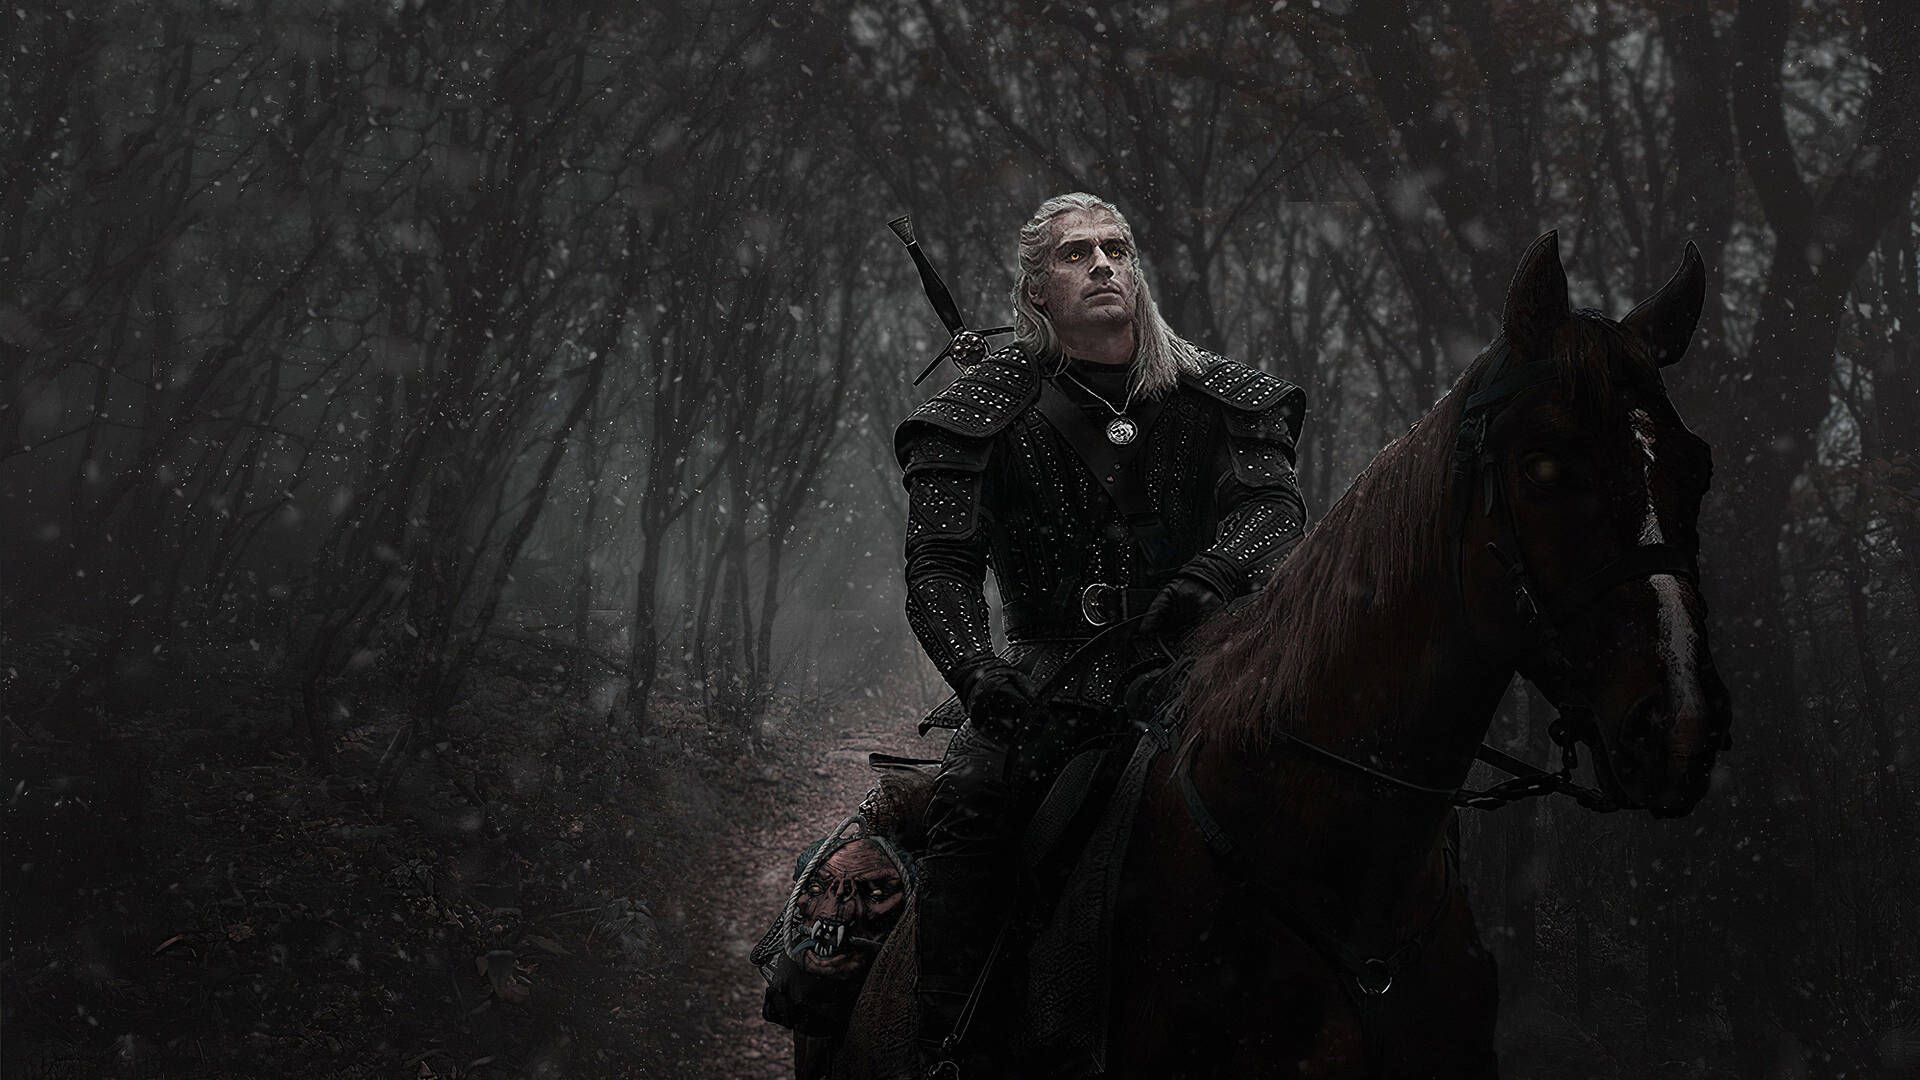 Witcher4k - Geralt Reitet Auf Einem Pferd. Wallpaper